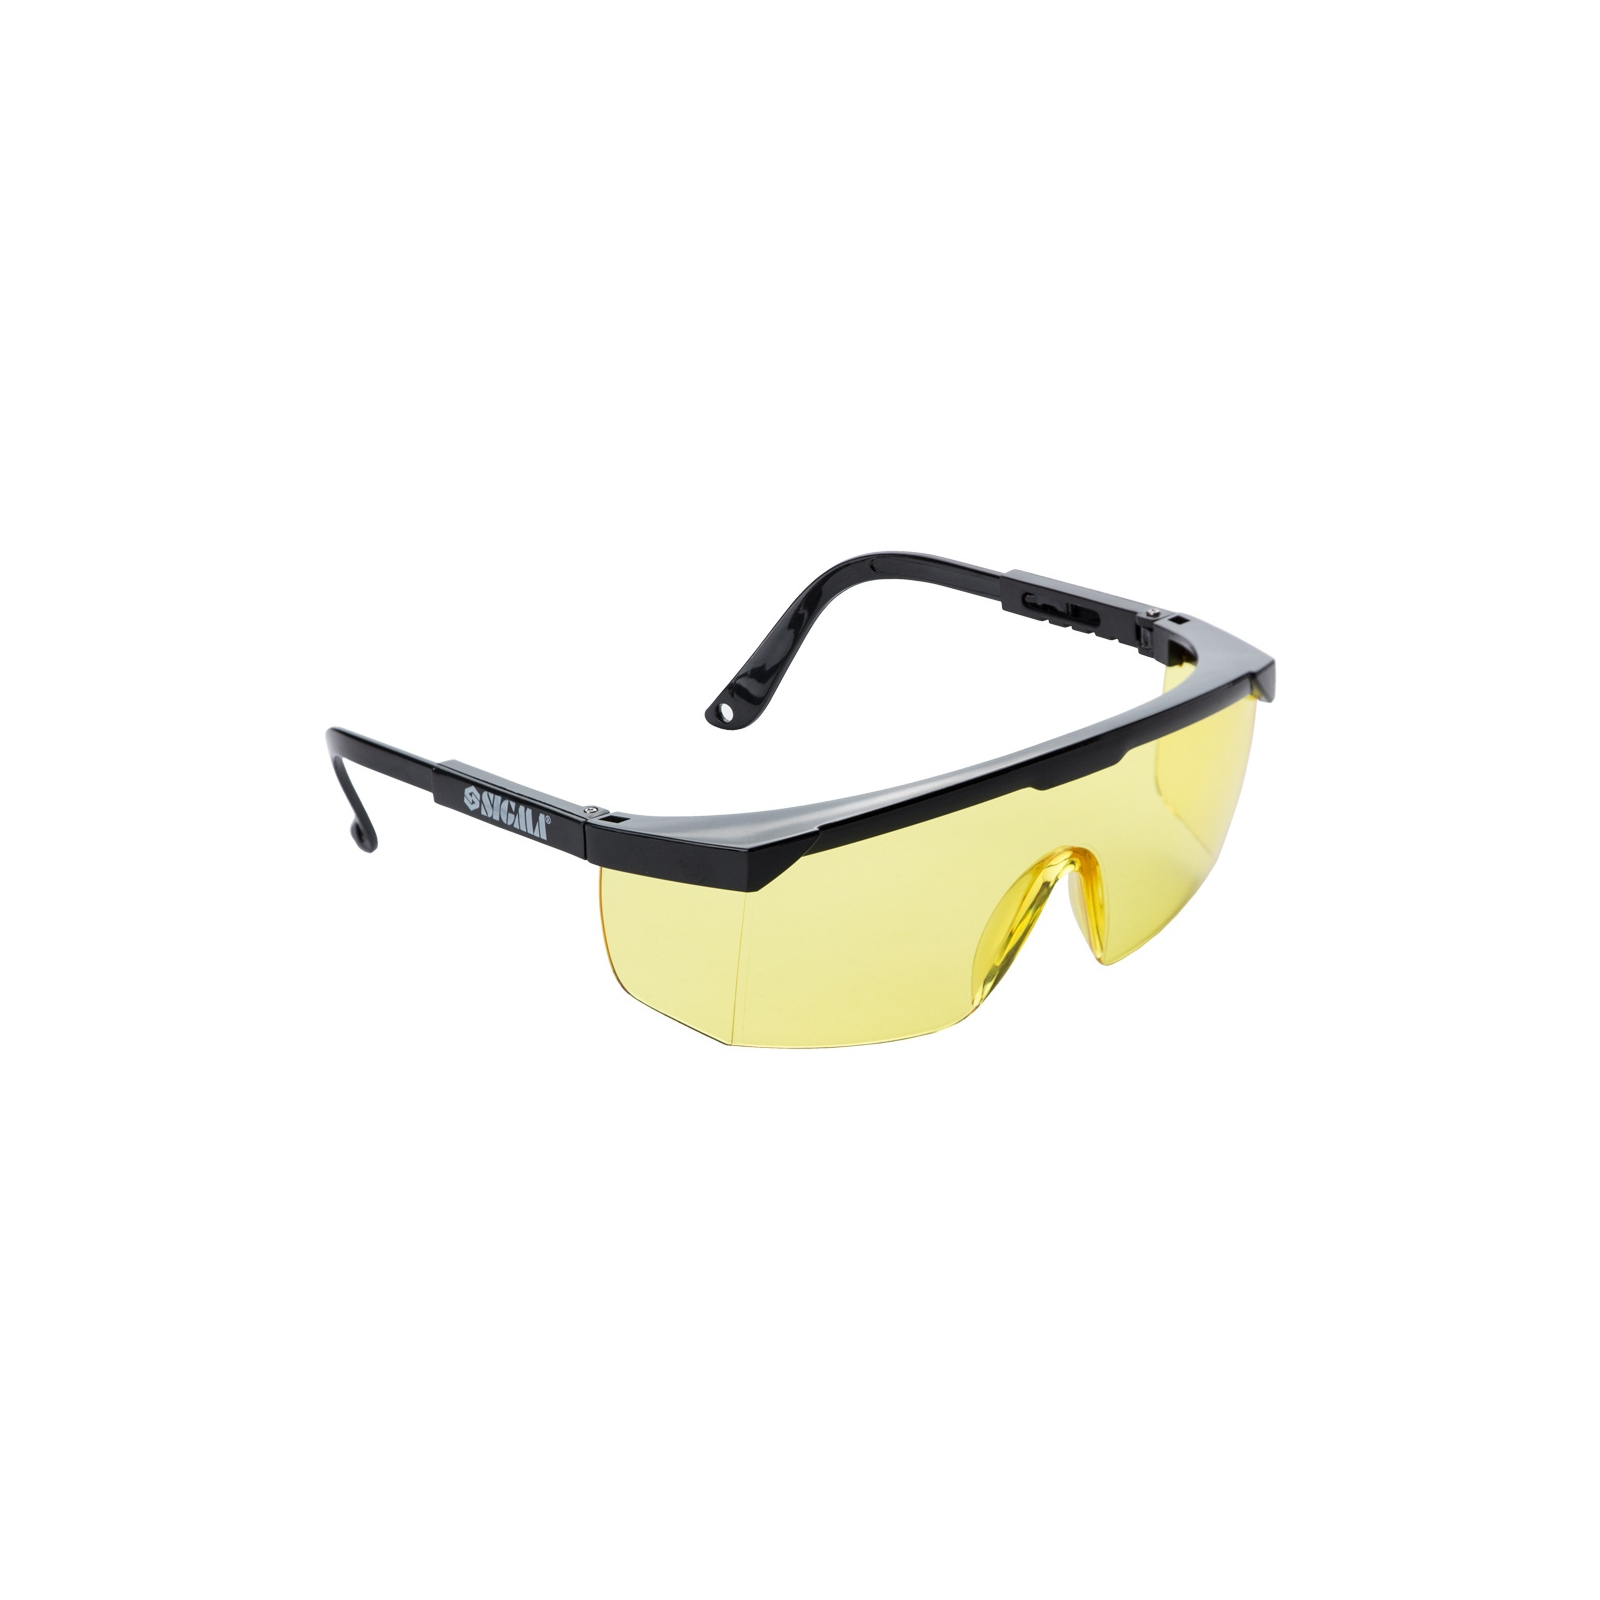 Защитные очки Sigma Fitter (9410251)